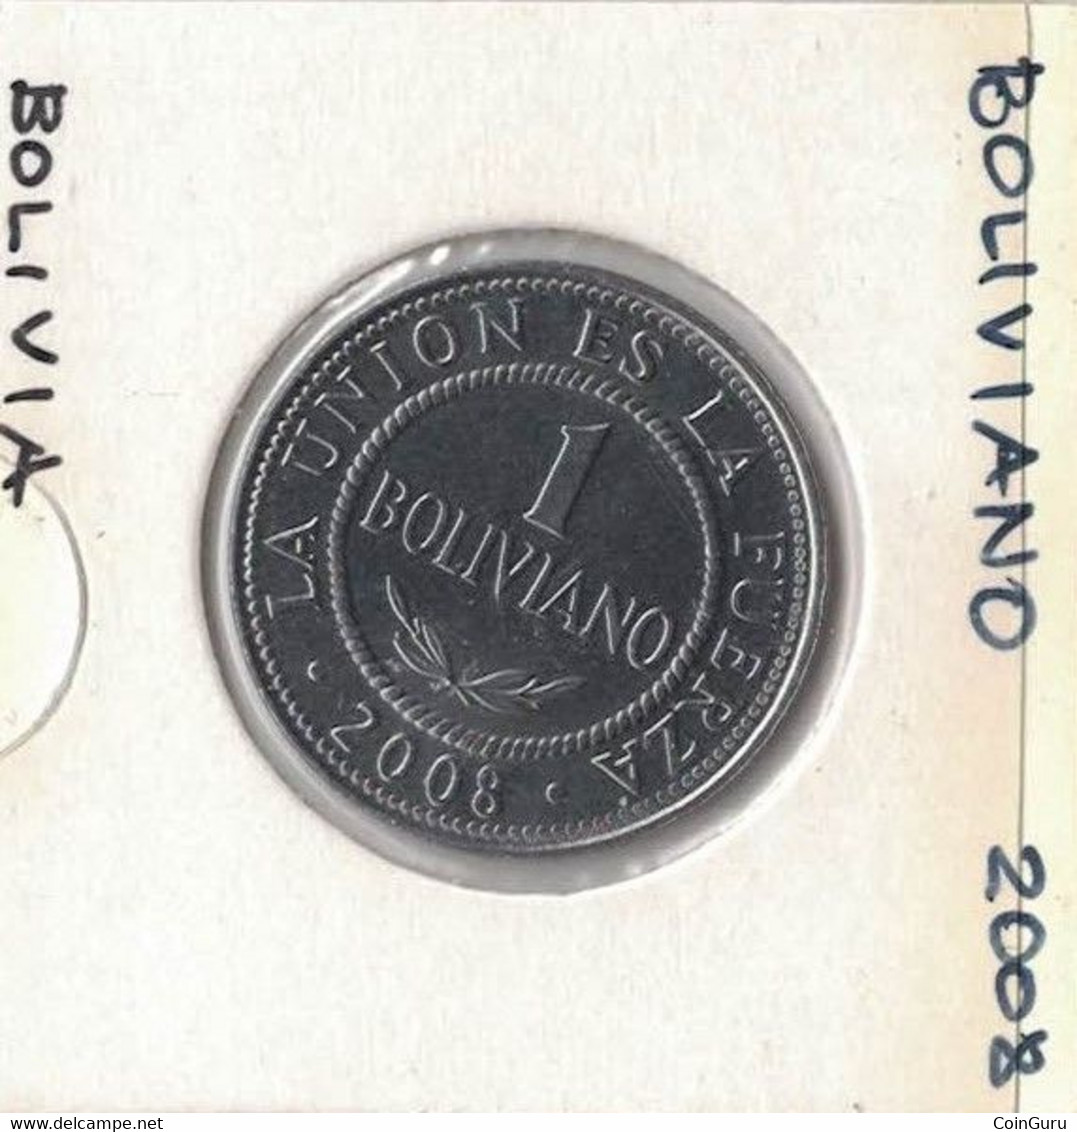 Bolivia  20 Or 50 Centavos Or  1 Or 5 Bolivianos, 2005 To 2008, Price Per Coin - Bolivie